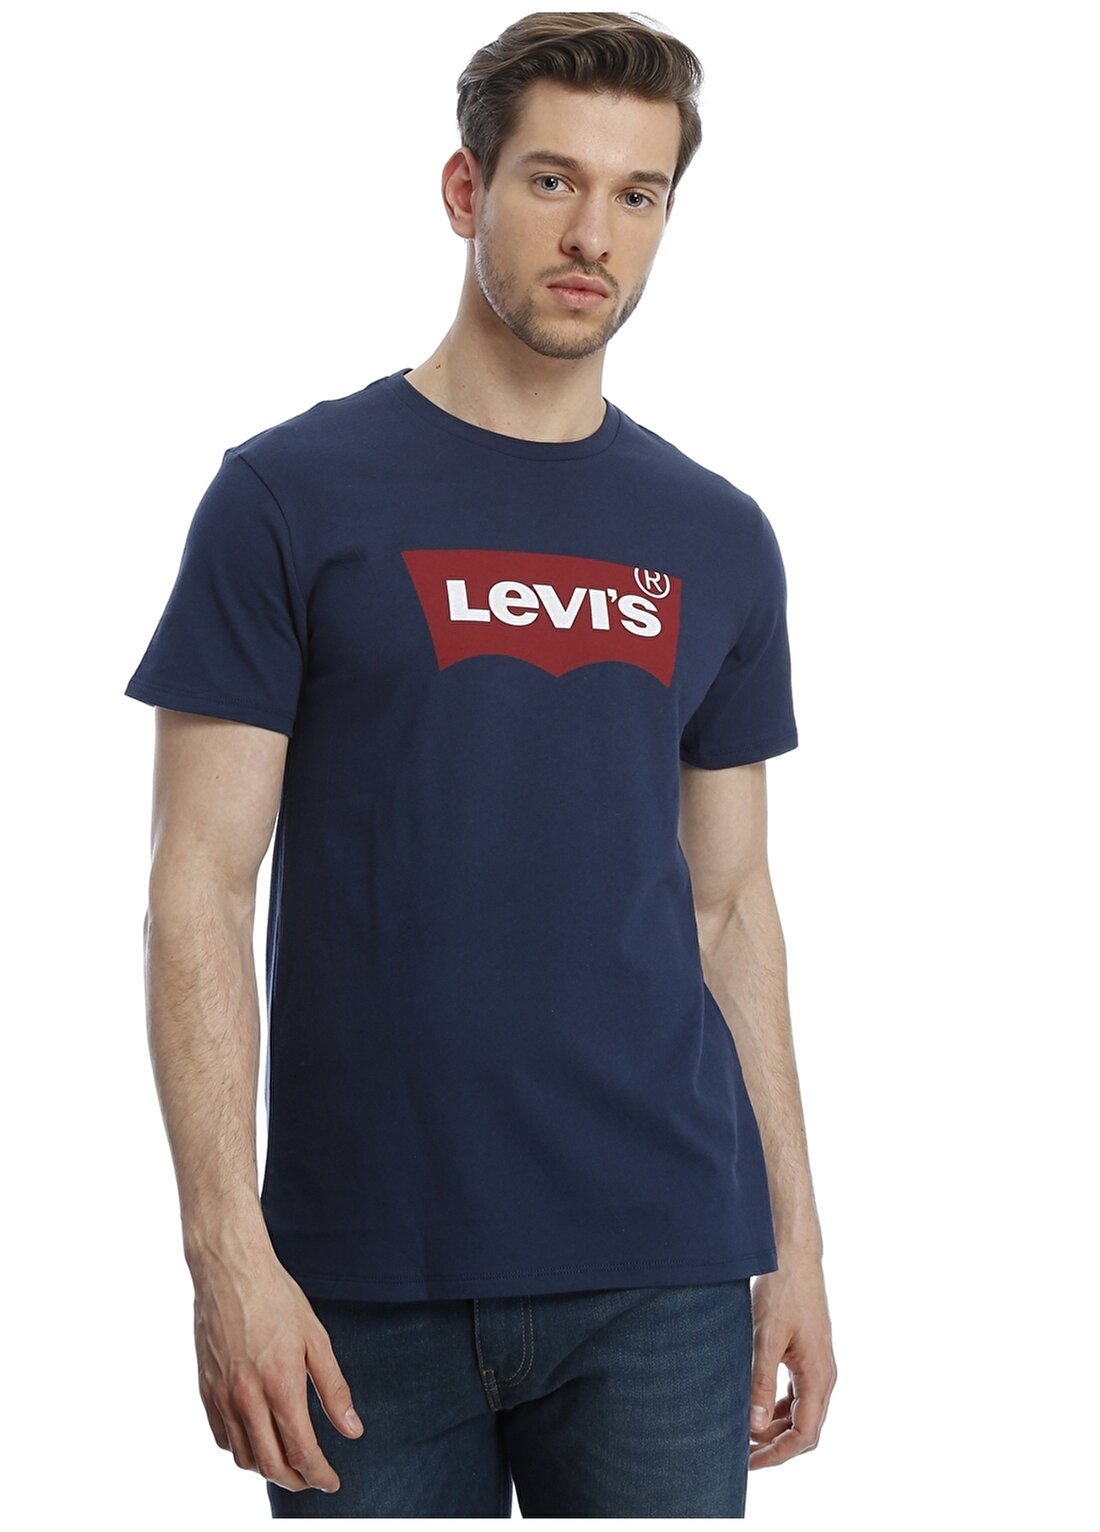 Levis 17783-0139 Graphic Setin Neck T-Shirt